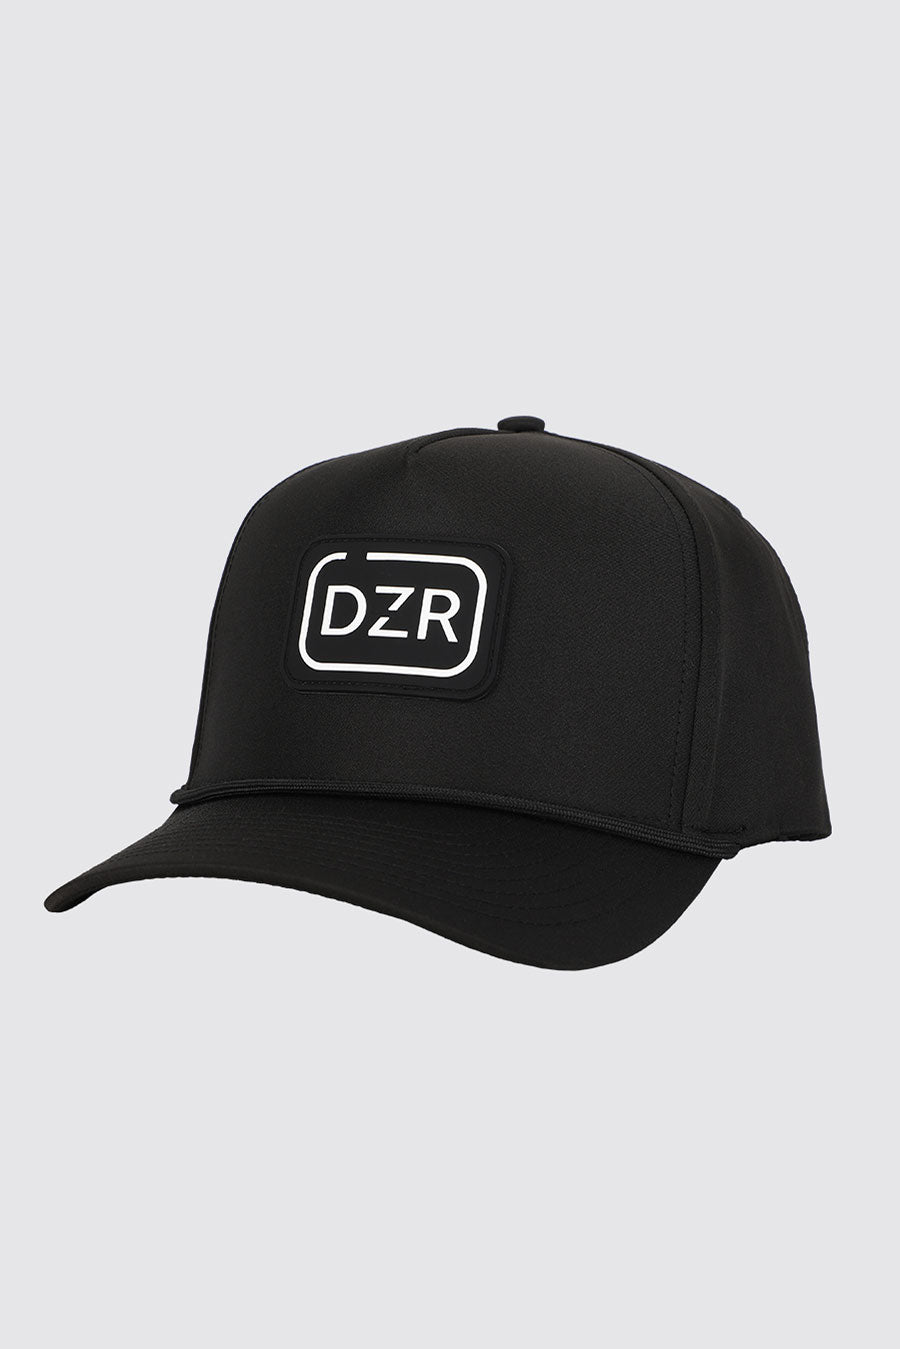 Dozer Dog Range Hat Front